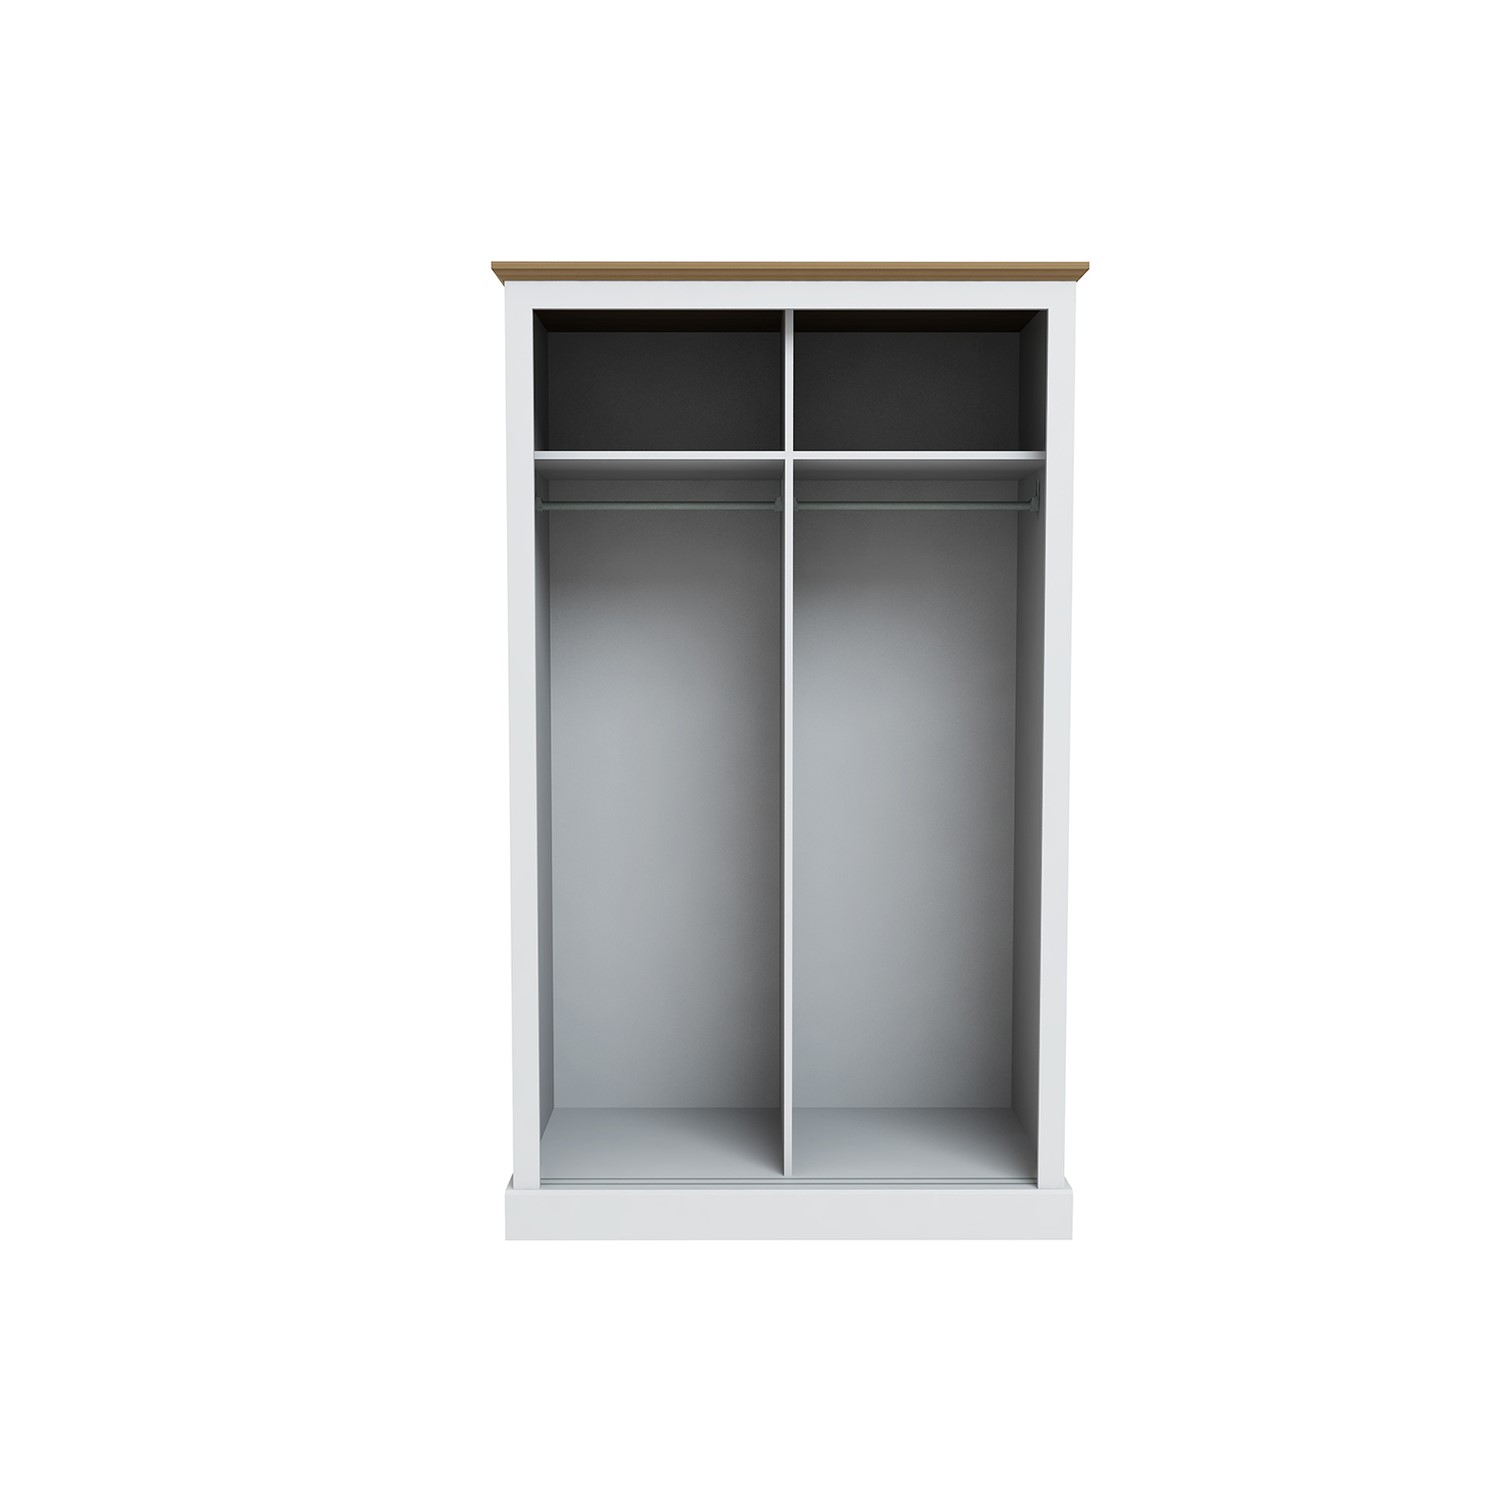 Read more about White and oak 2 door sliding mirrored wardrobe devon lpd